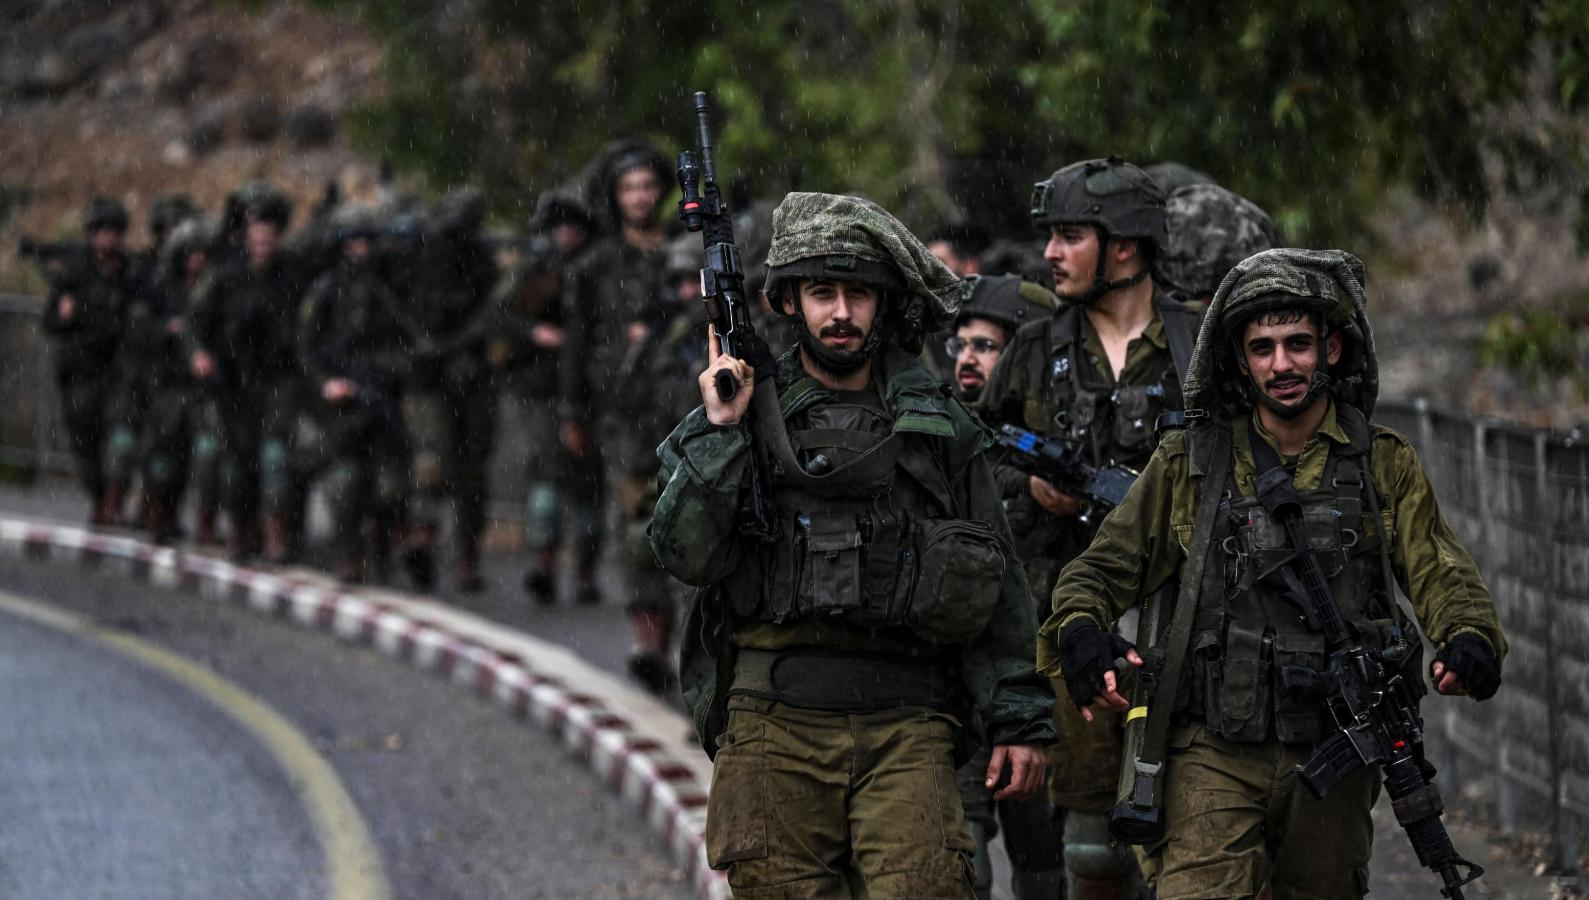 Israel Desafía a Estados Unidos y Asegura Continuará Operaciones en Gaza sin Apoyo Extranjero